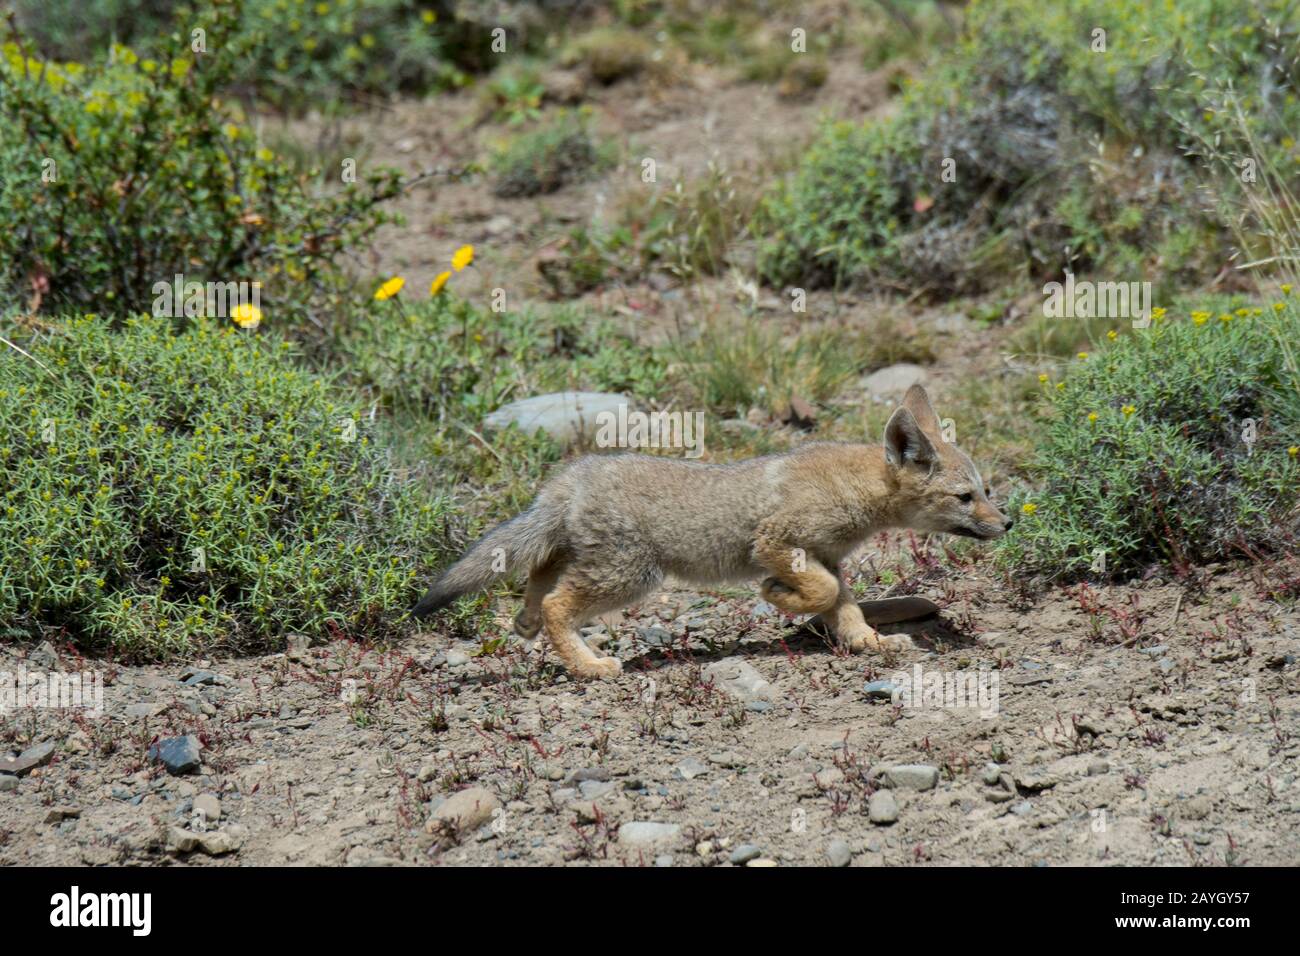 Un kit de renard gris (Urocyon cinereoargenteus), ou renard gris, explorant les fleurs sauvages de Mata Barrosa ou Neneo (Mulinum spinosum) à Torres del Paine Nationa Banque D'Images